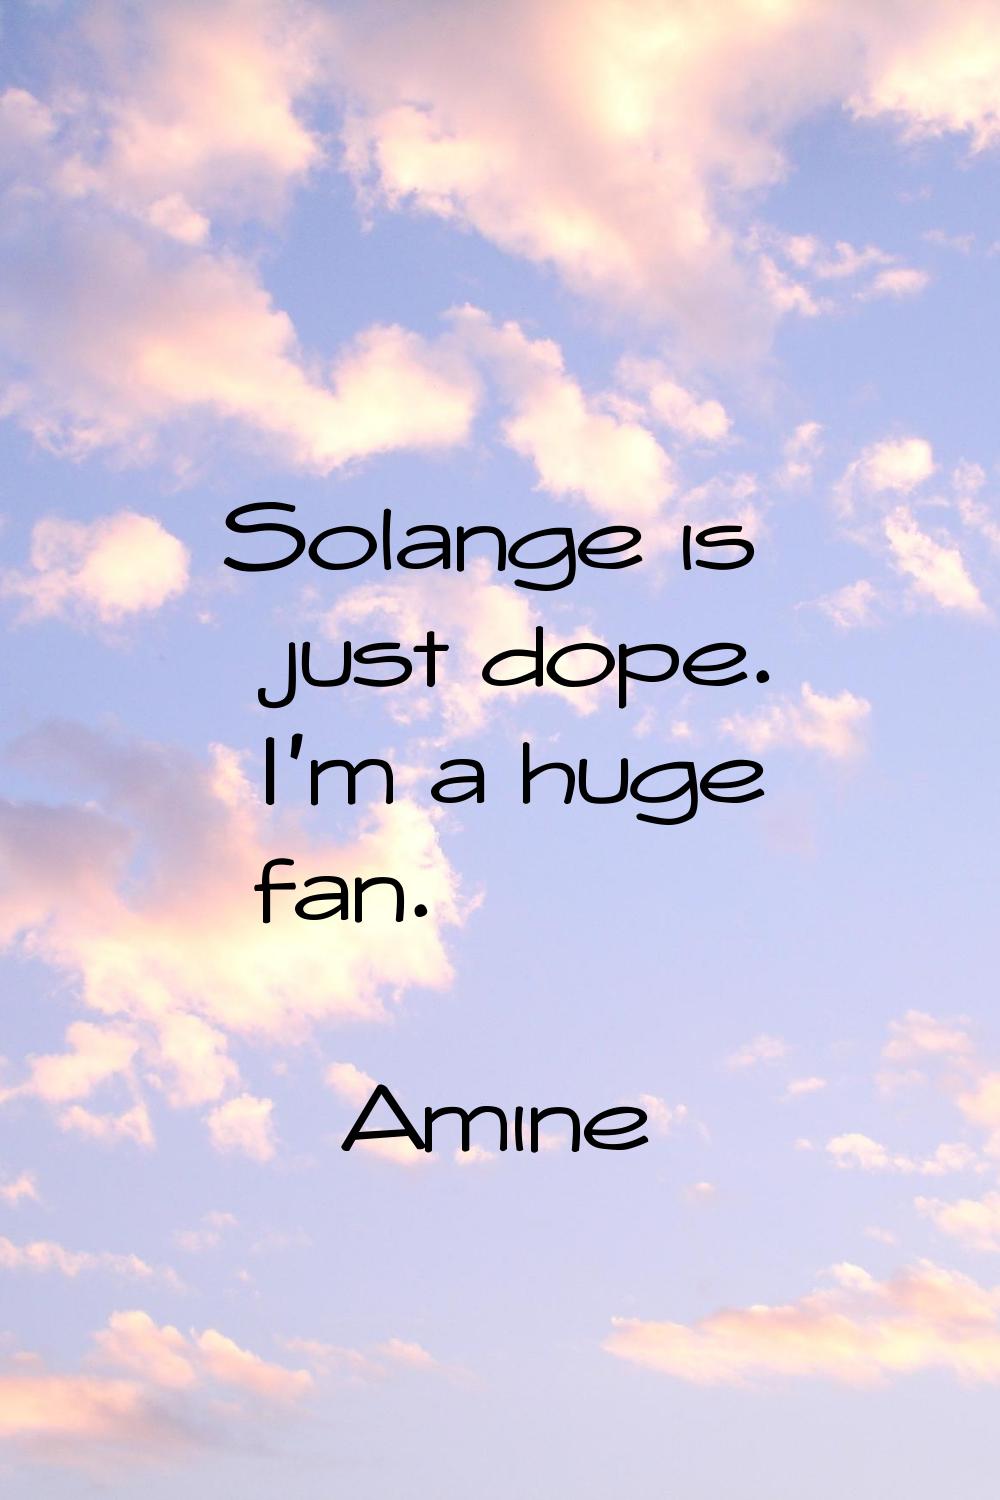 Solange is just dope. I'm a huge fan.